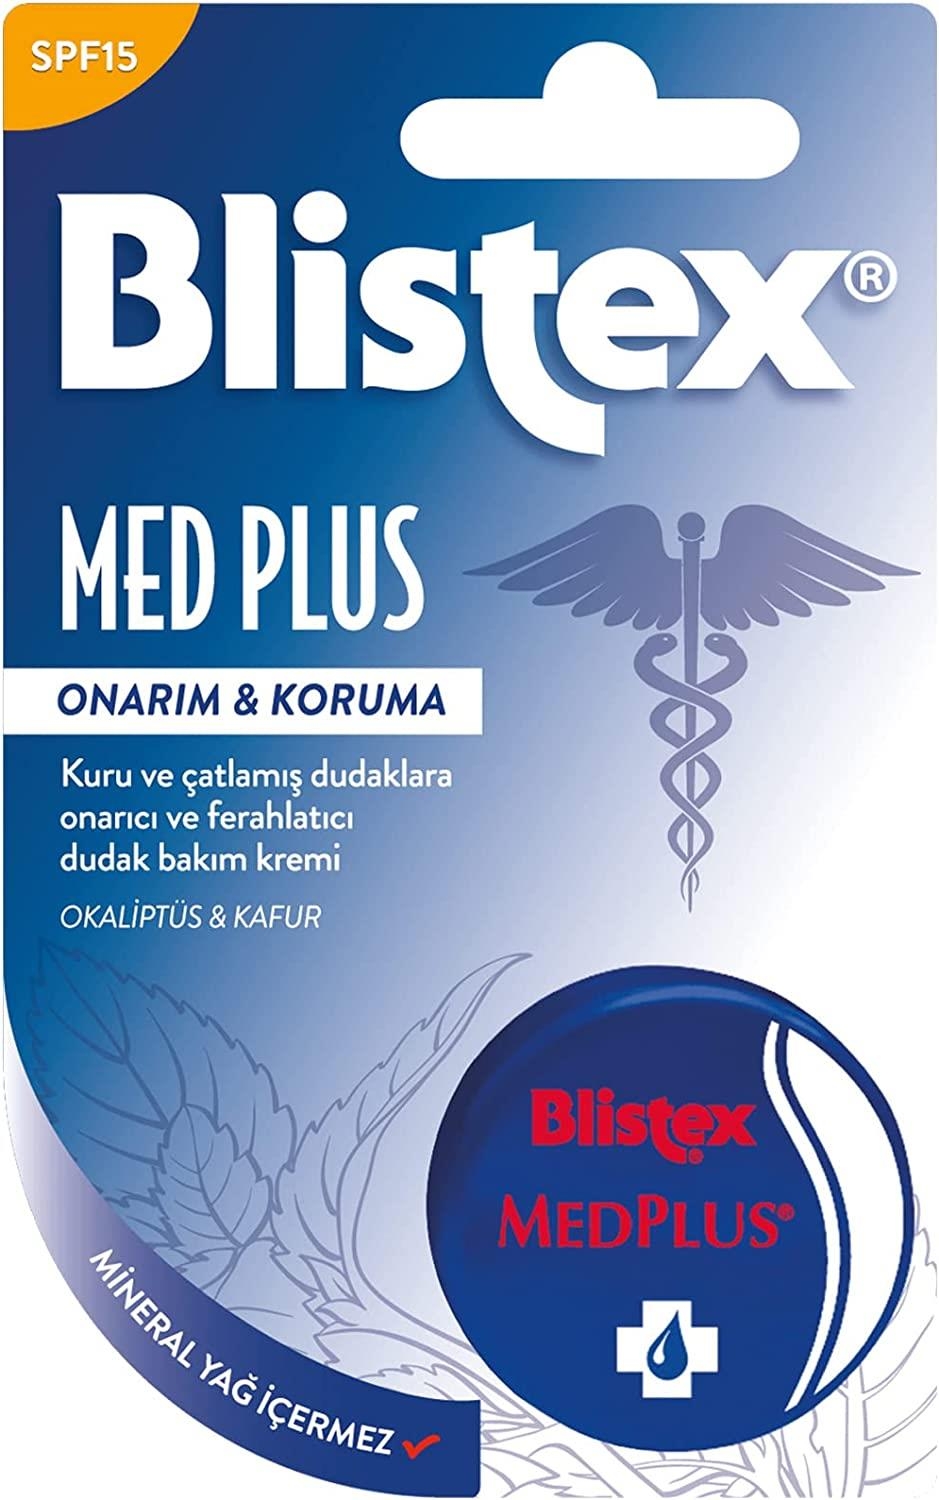 Blistex MedPlus Balm Onarım & Koruma Dudak Balmı Spf 15 7ml - 1